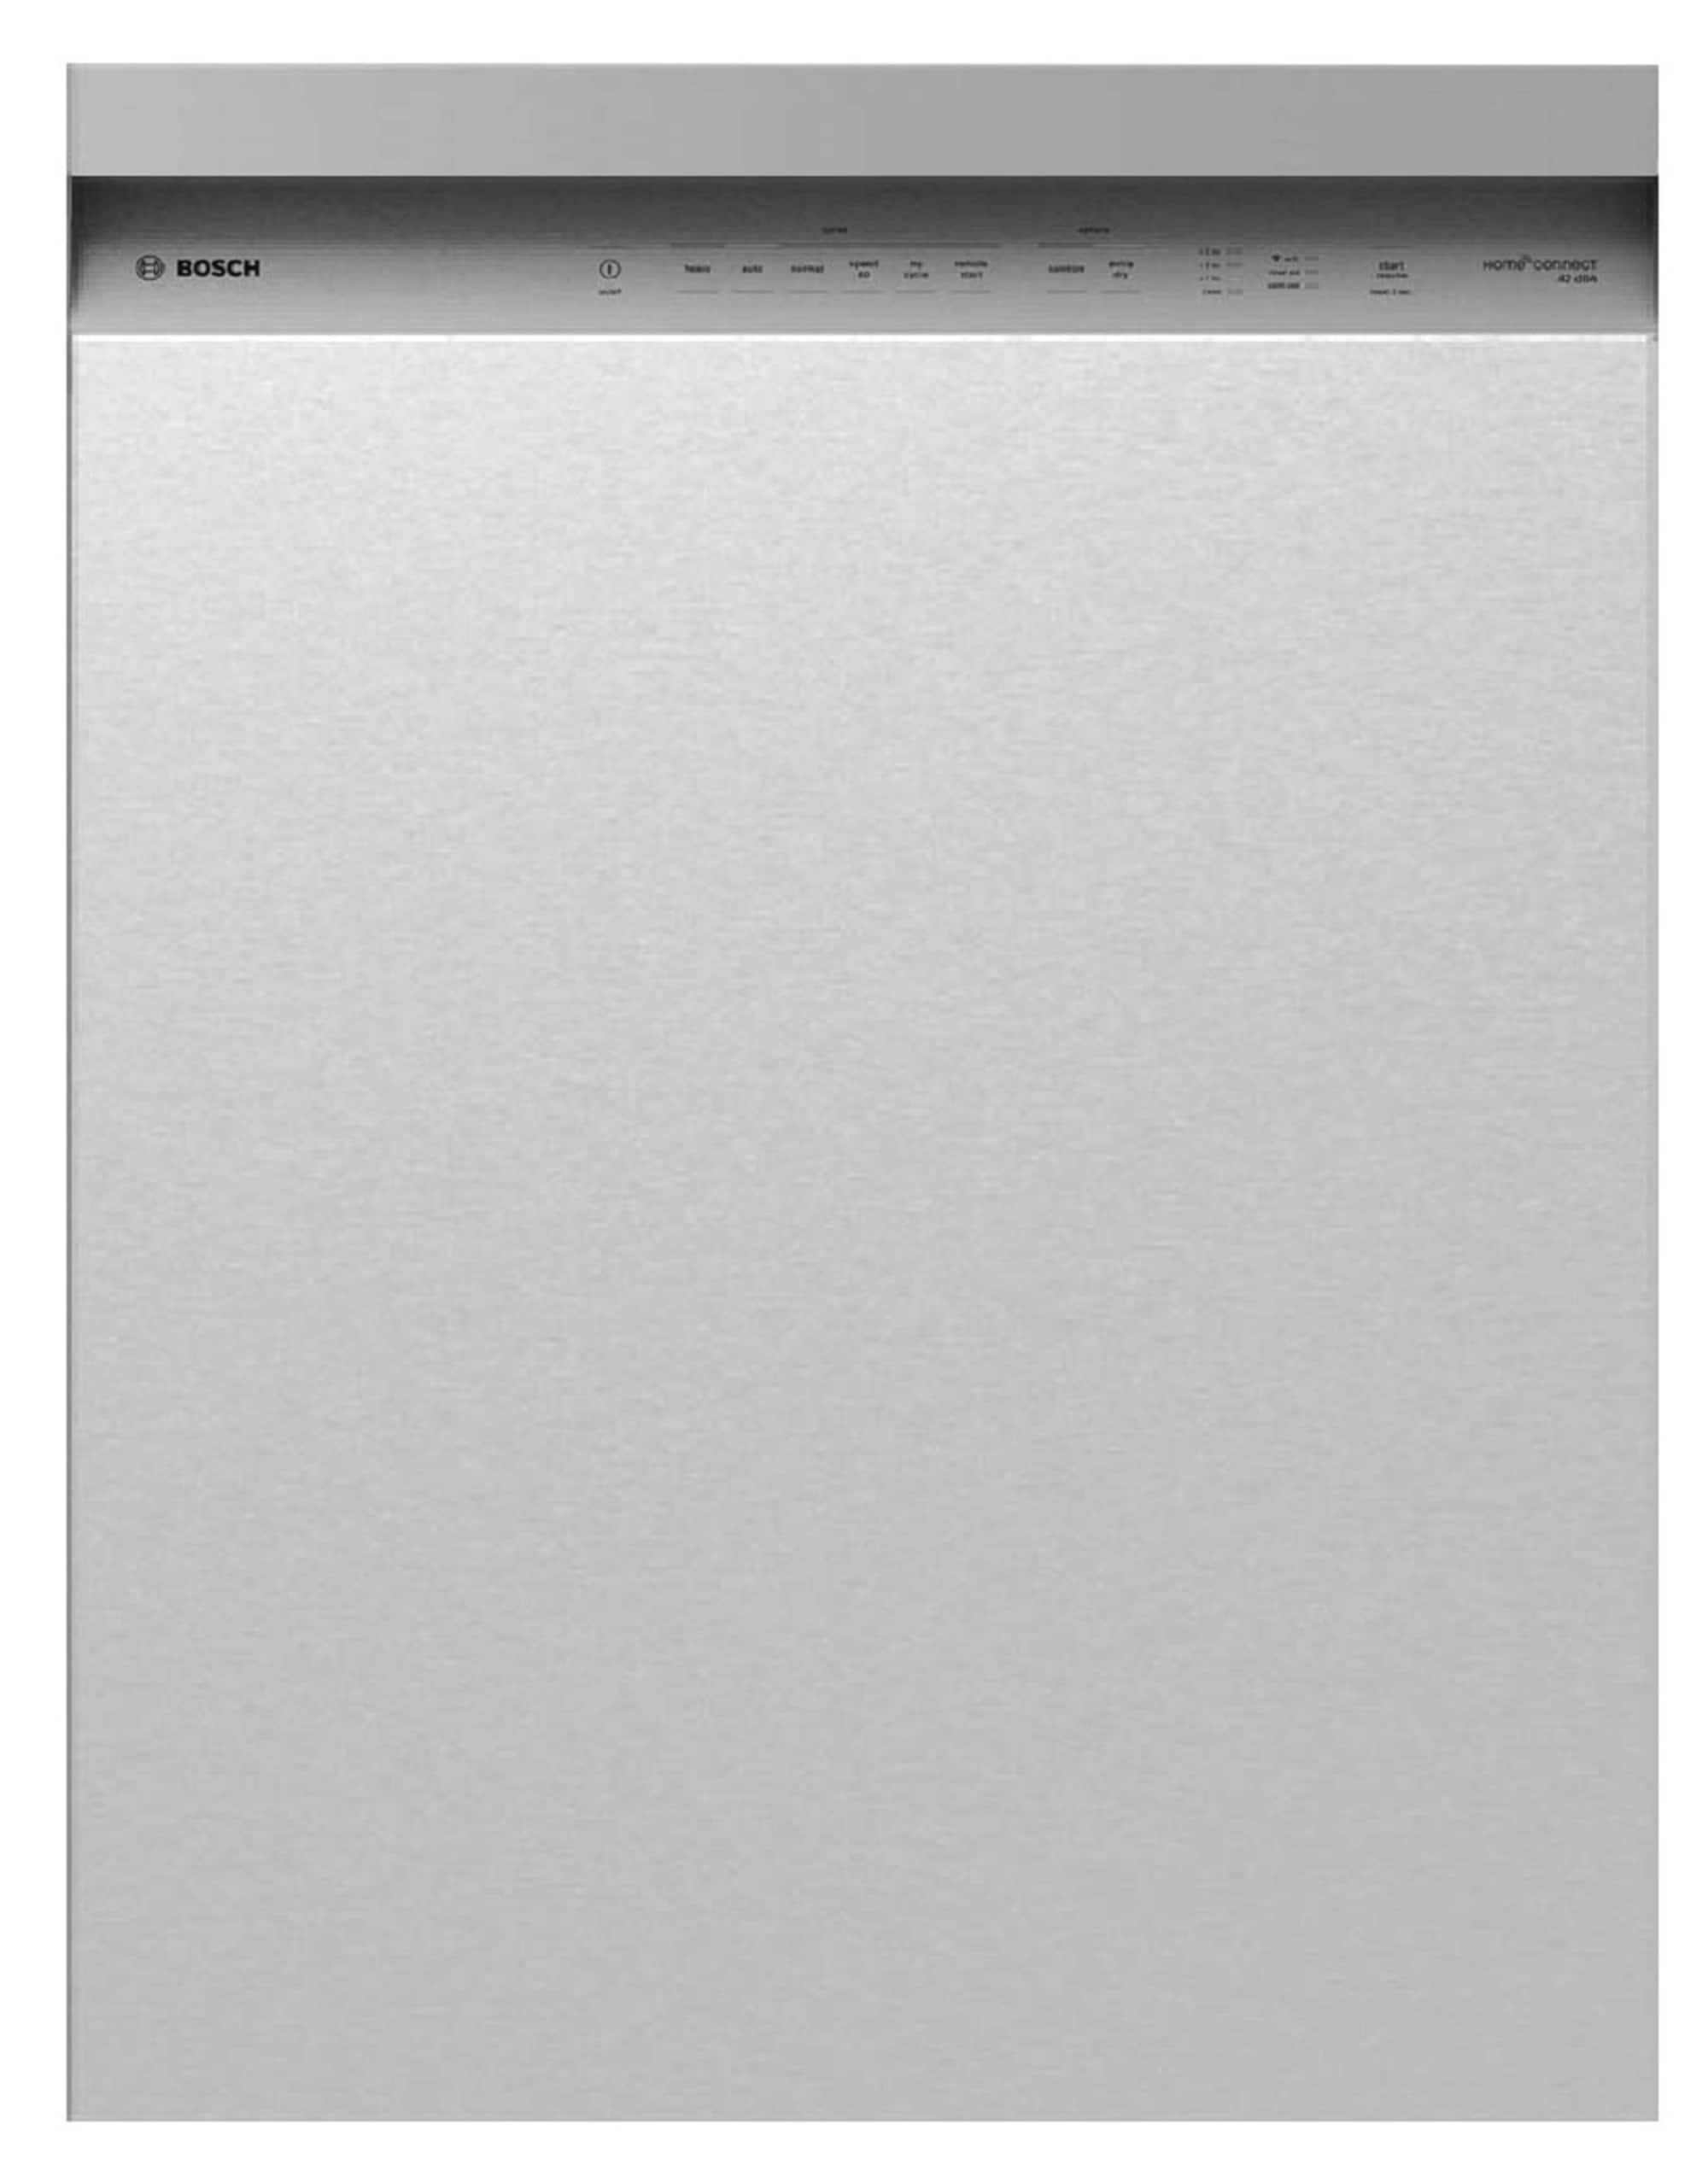 Bosch Dishwasher Installation 300 Series Dishwasher 24'' Stainless